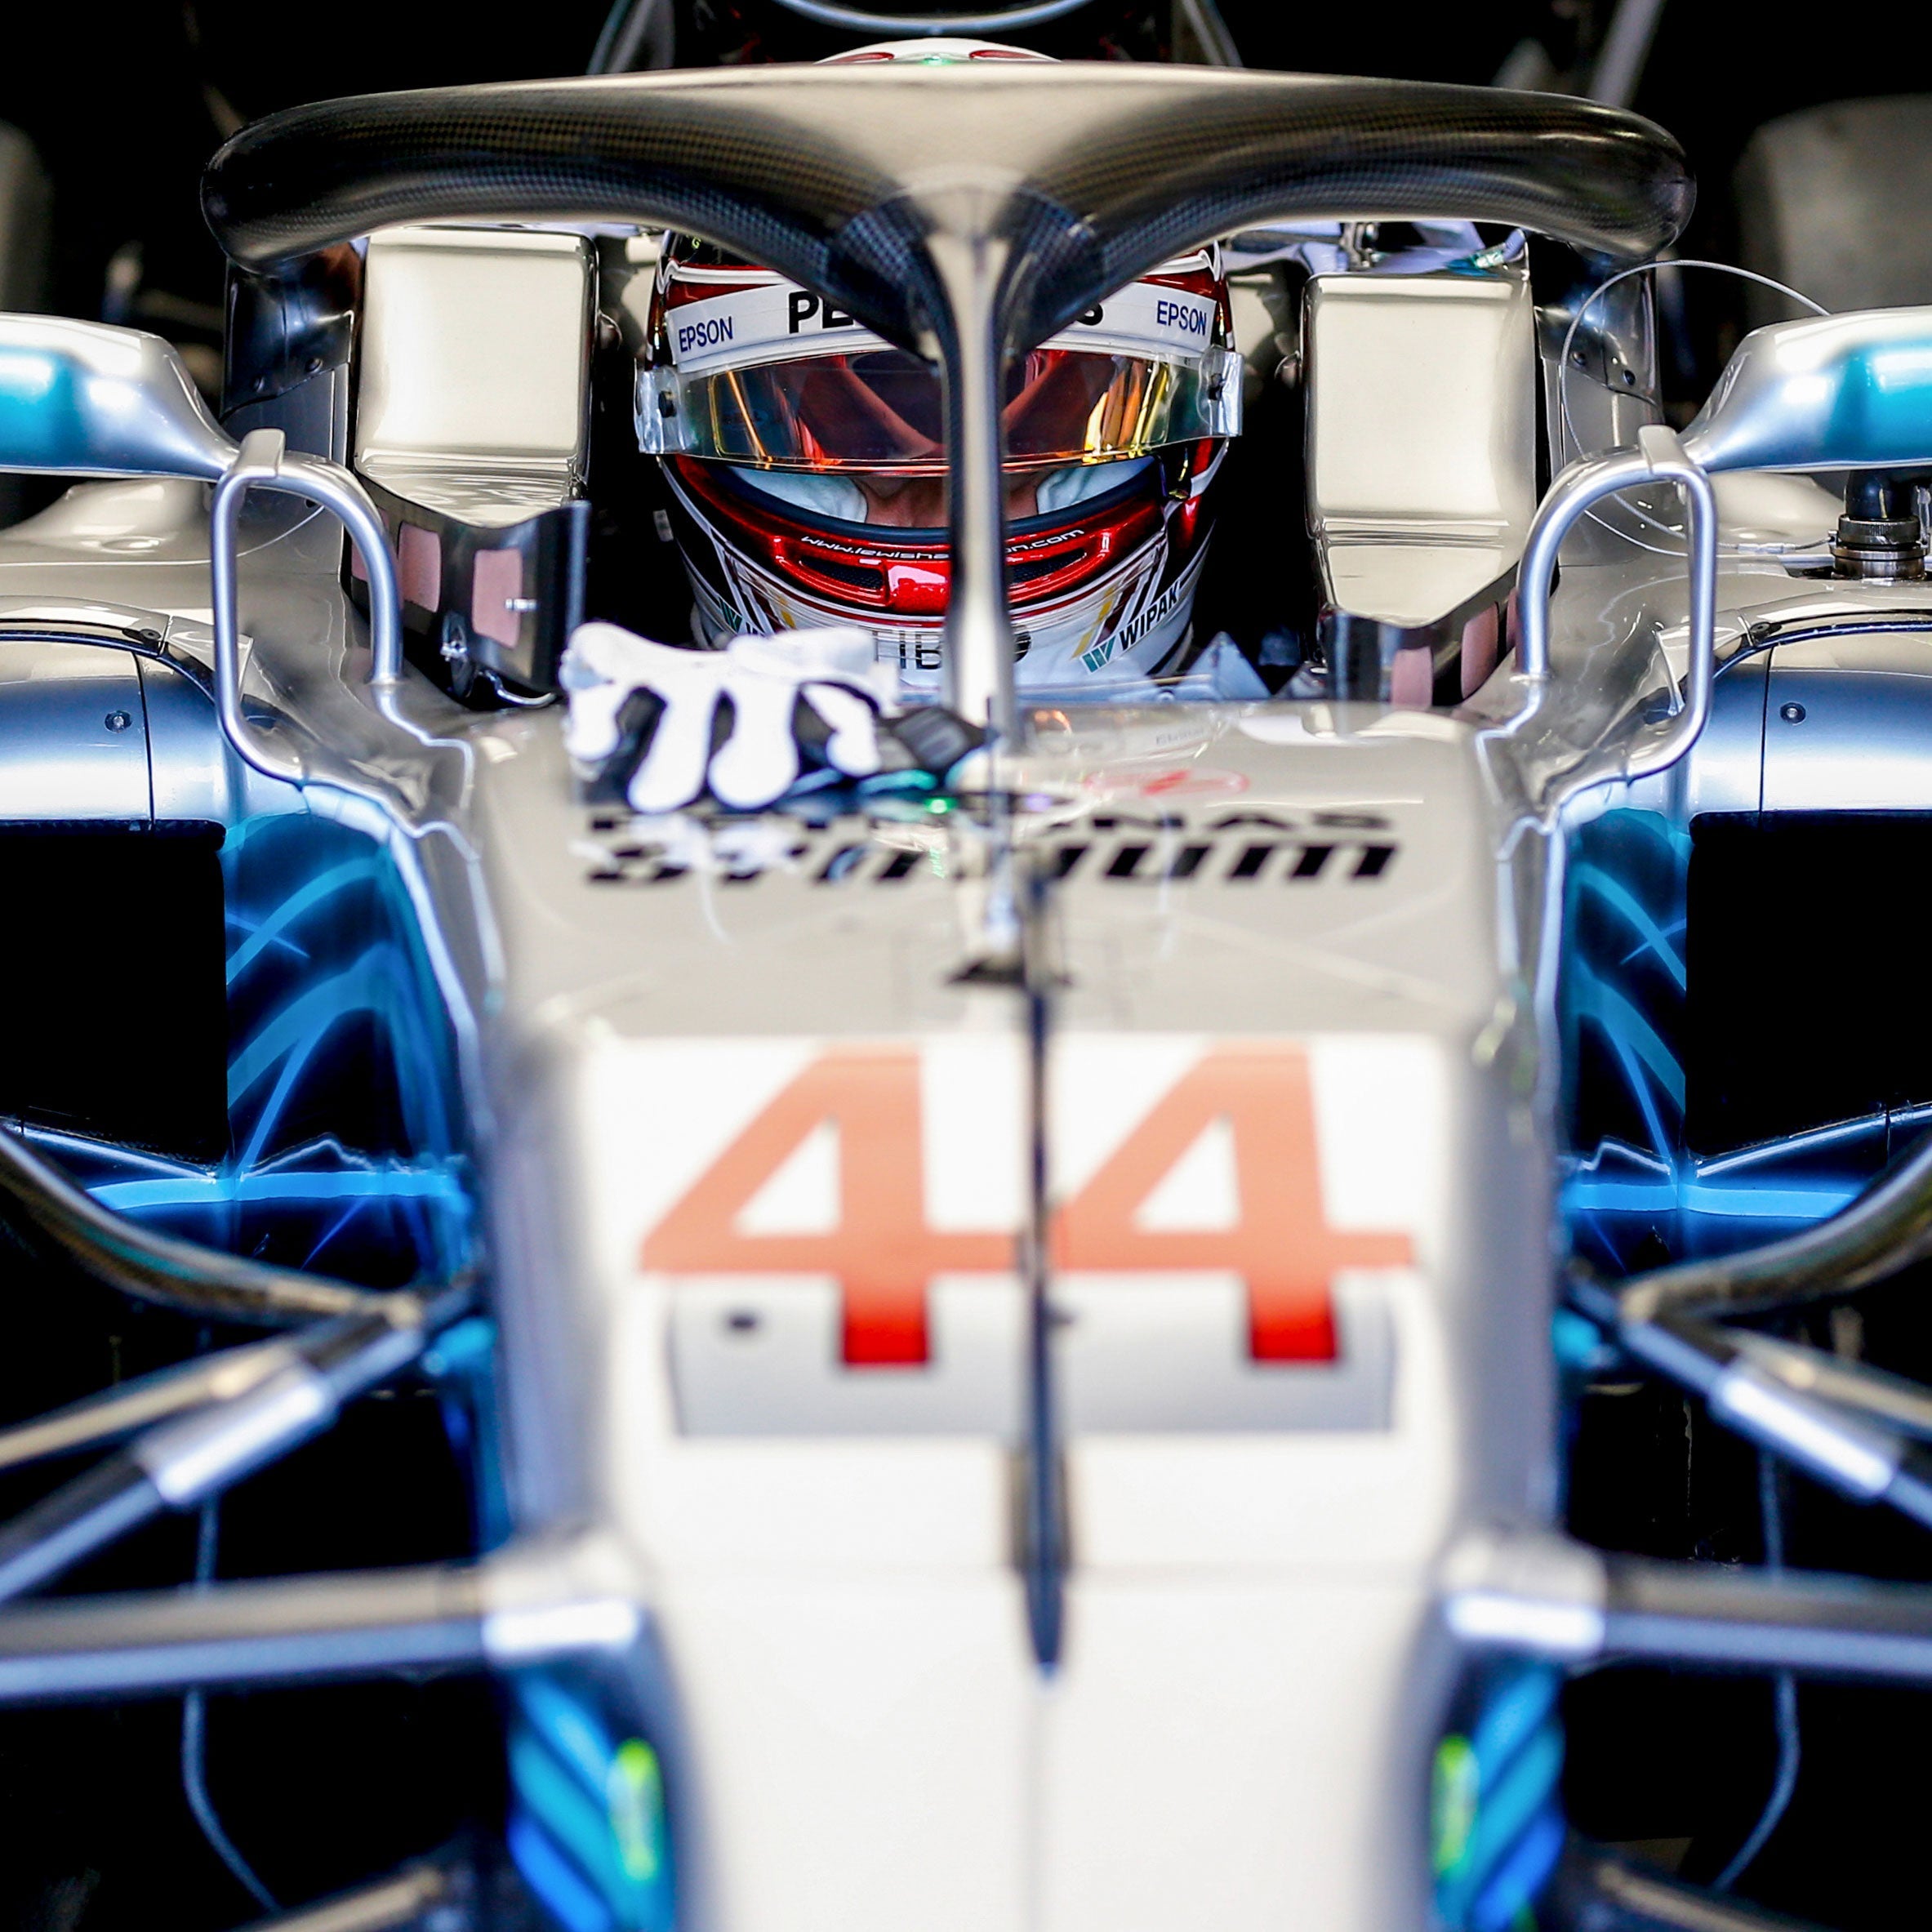 Lewis Hamilton 2018 Bodywork & Photo – Monaco GP